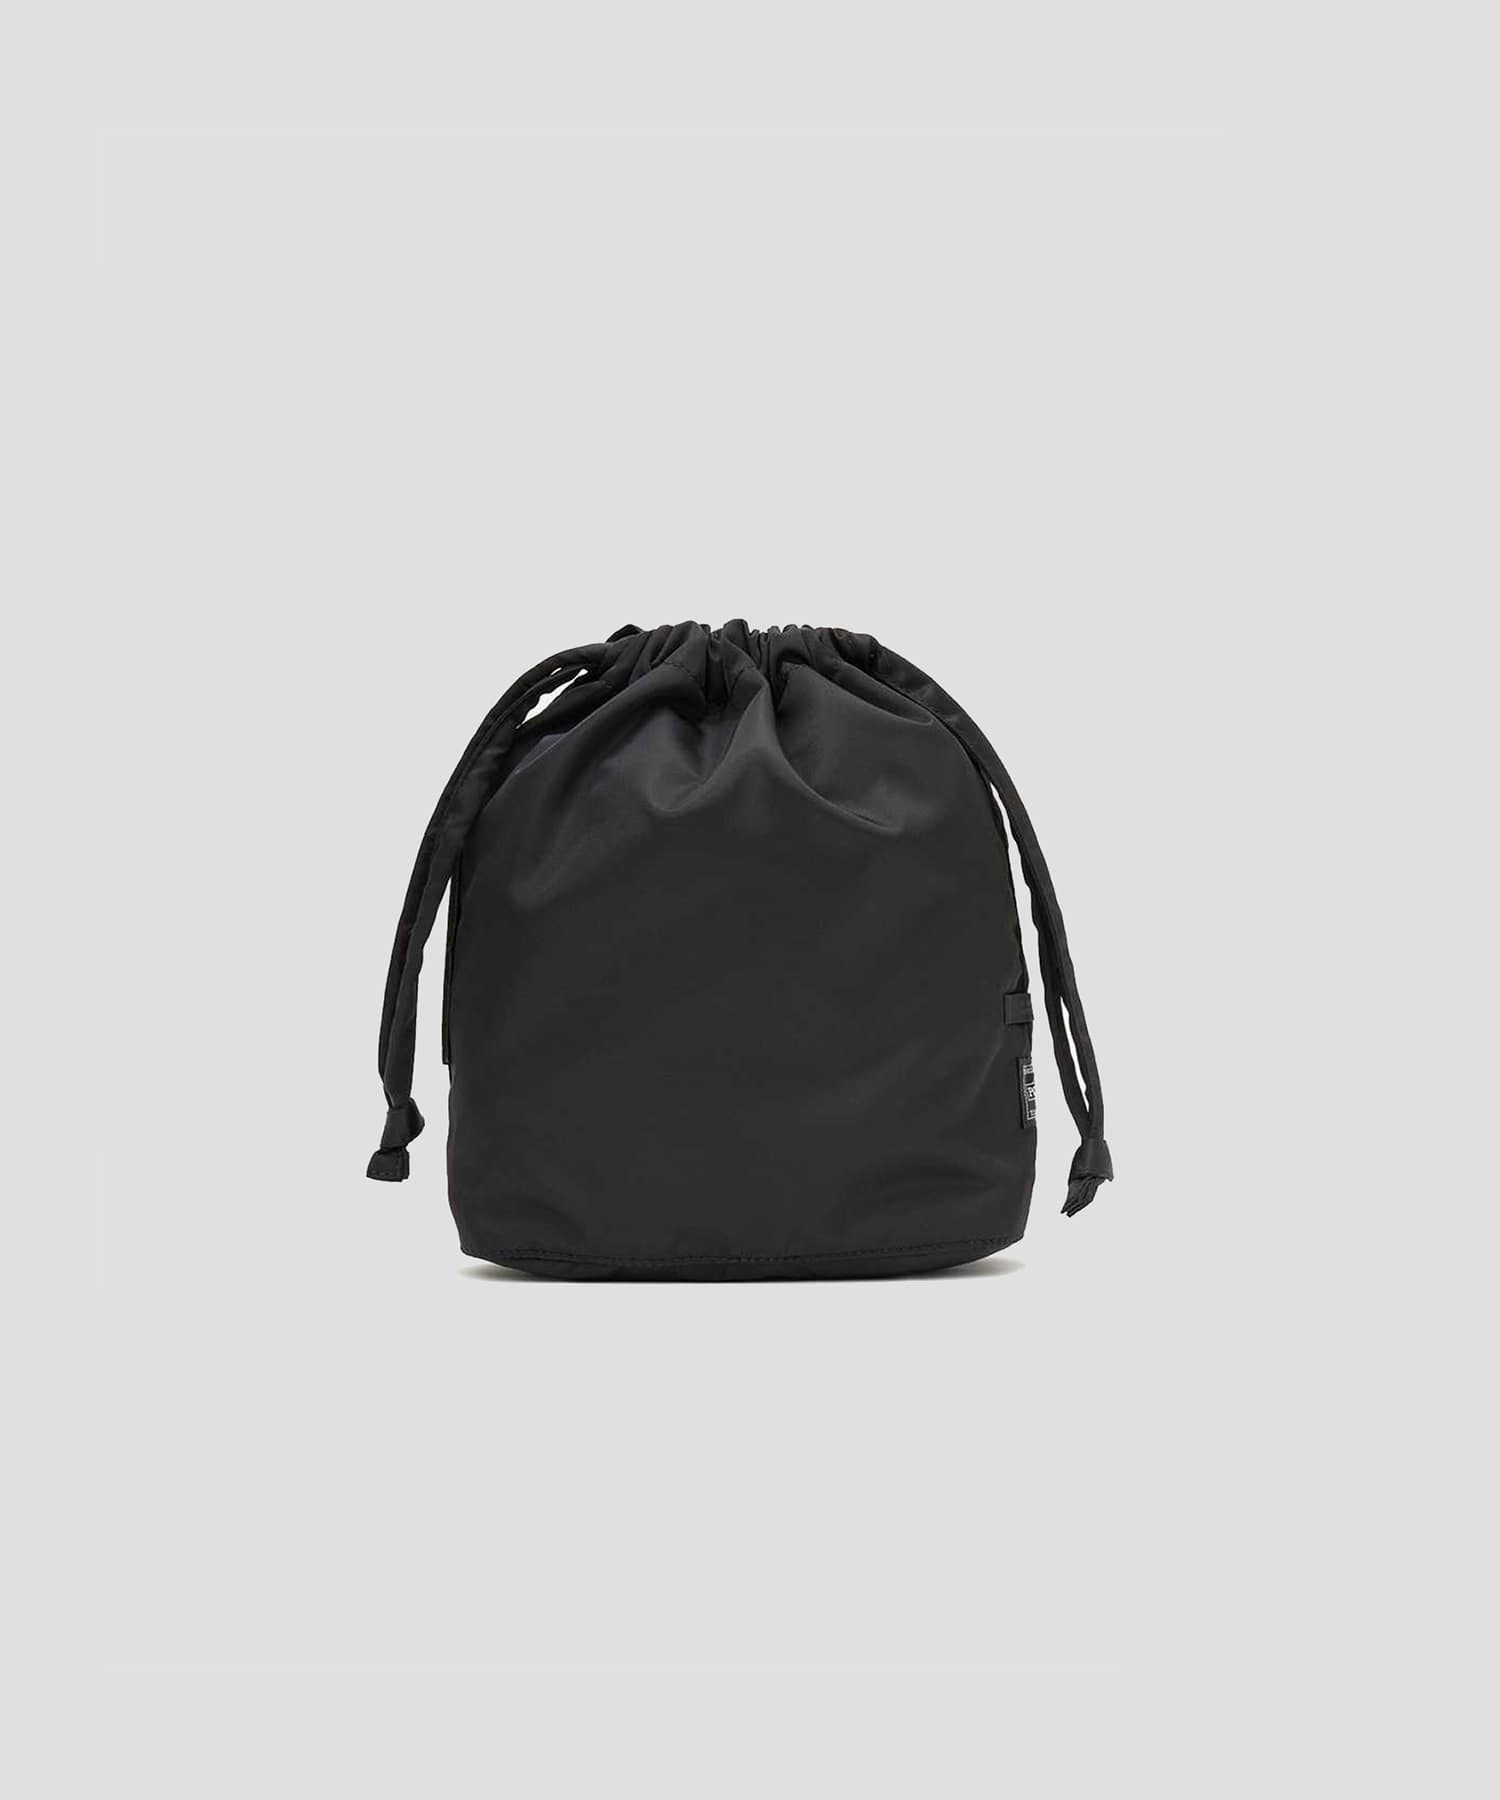 ×PORTER Mini Bag